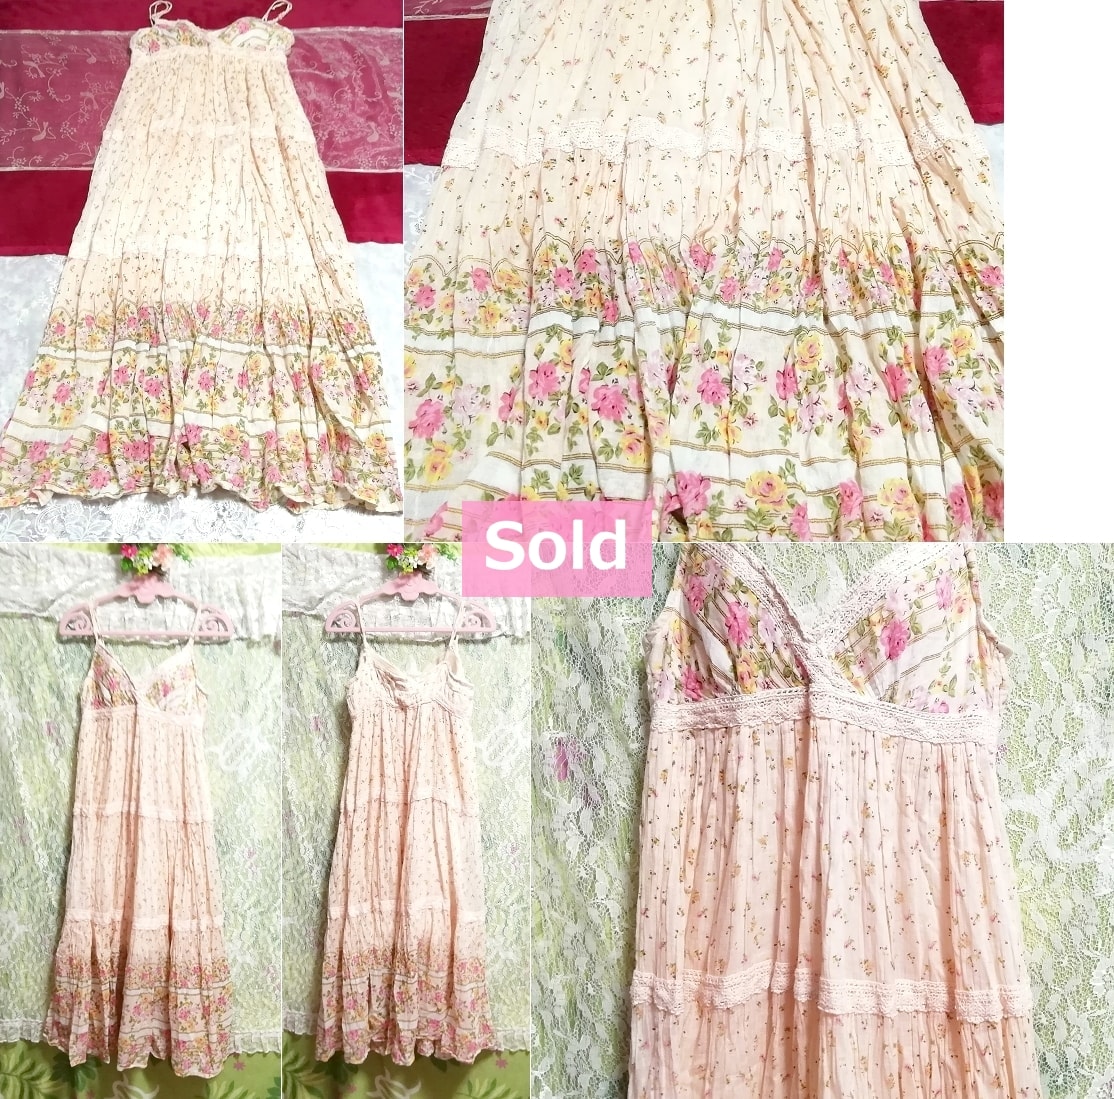 Pink flower pattern cotton camisole skirt dress / negligee